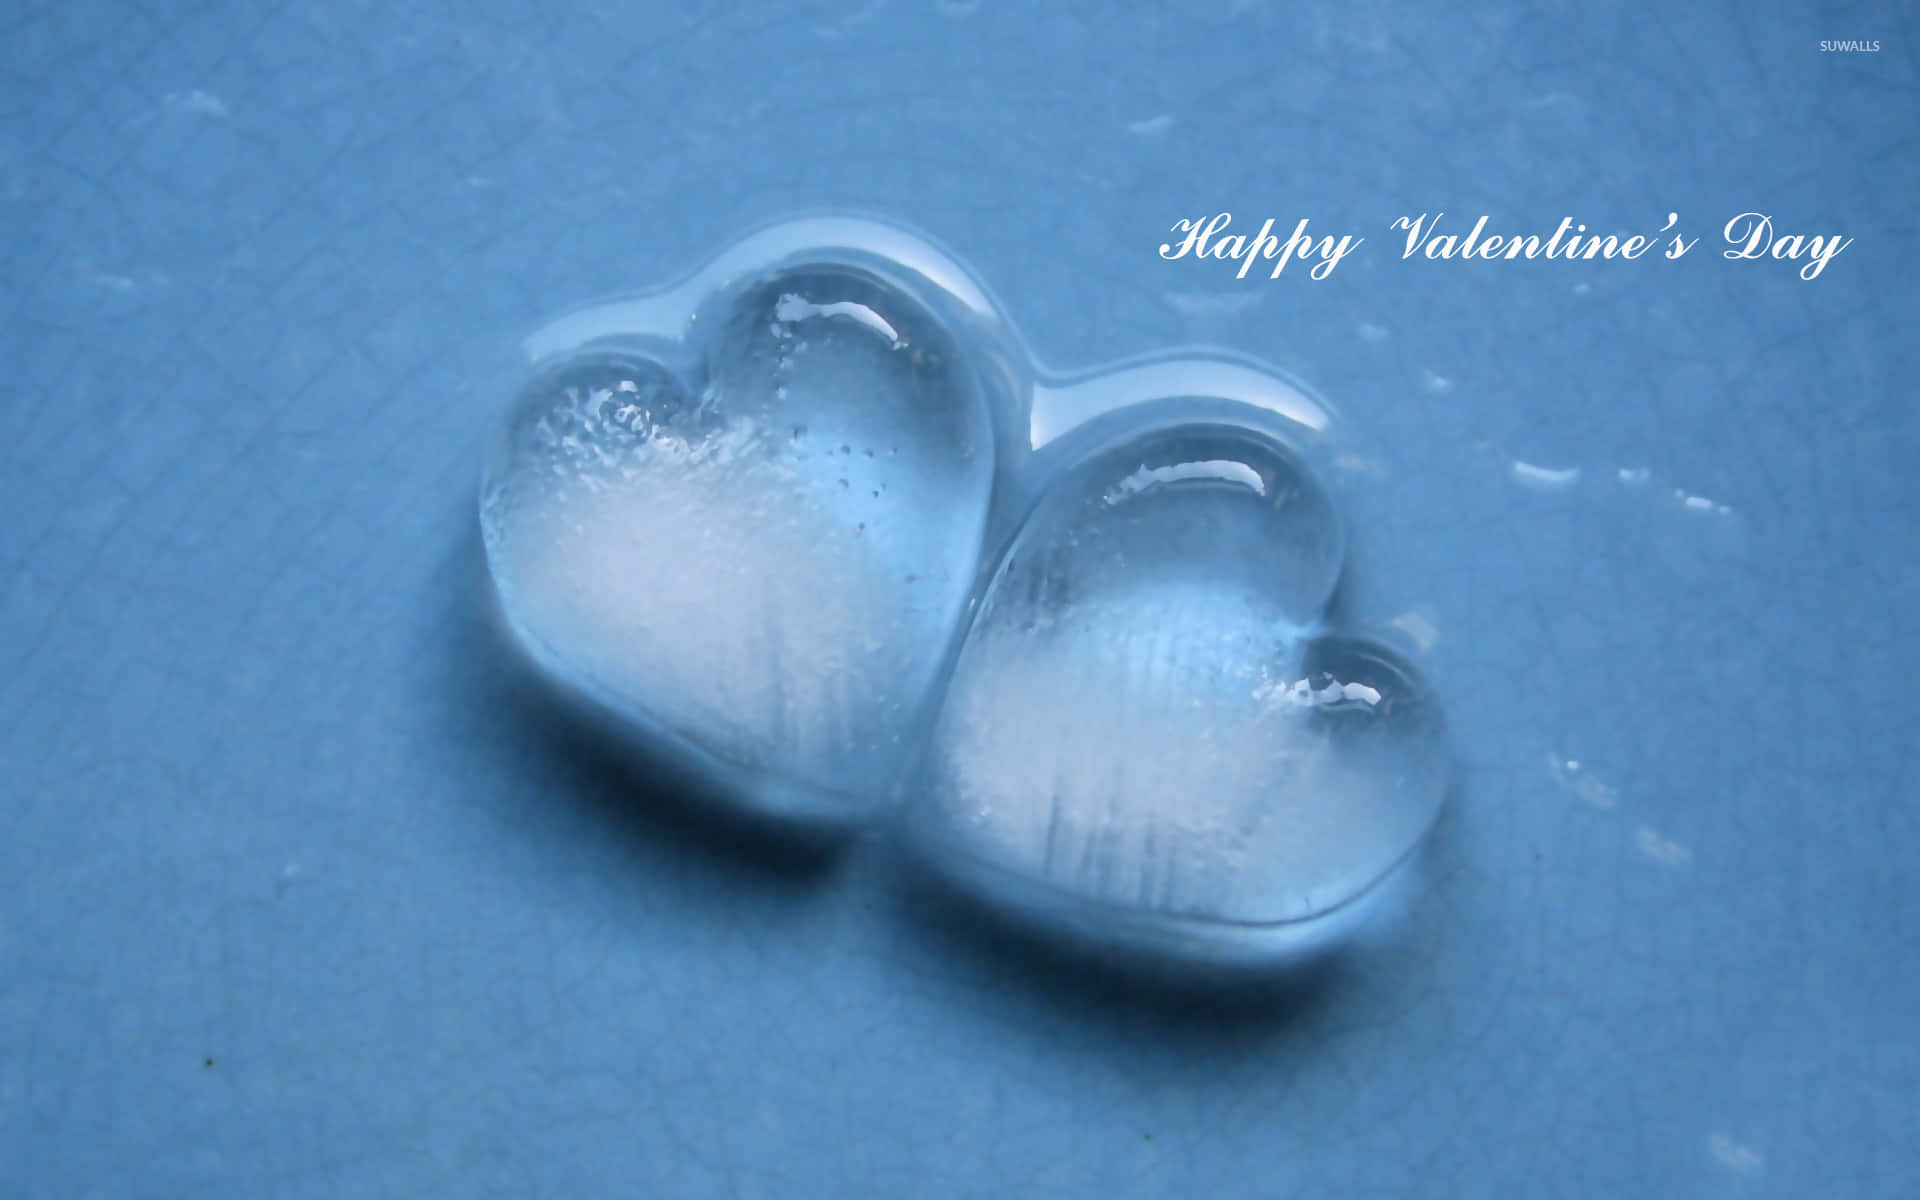 Machensie Diesen Valentinstag Besonders, Indem Sie Ihre Liebe Ausdrücken.